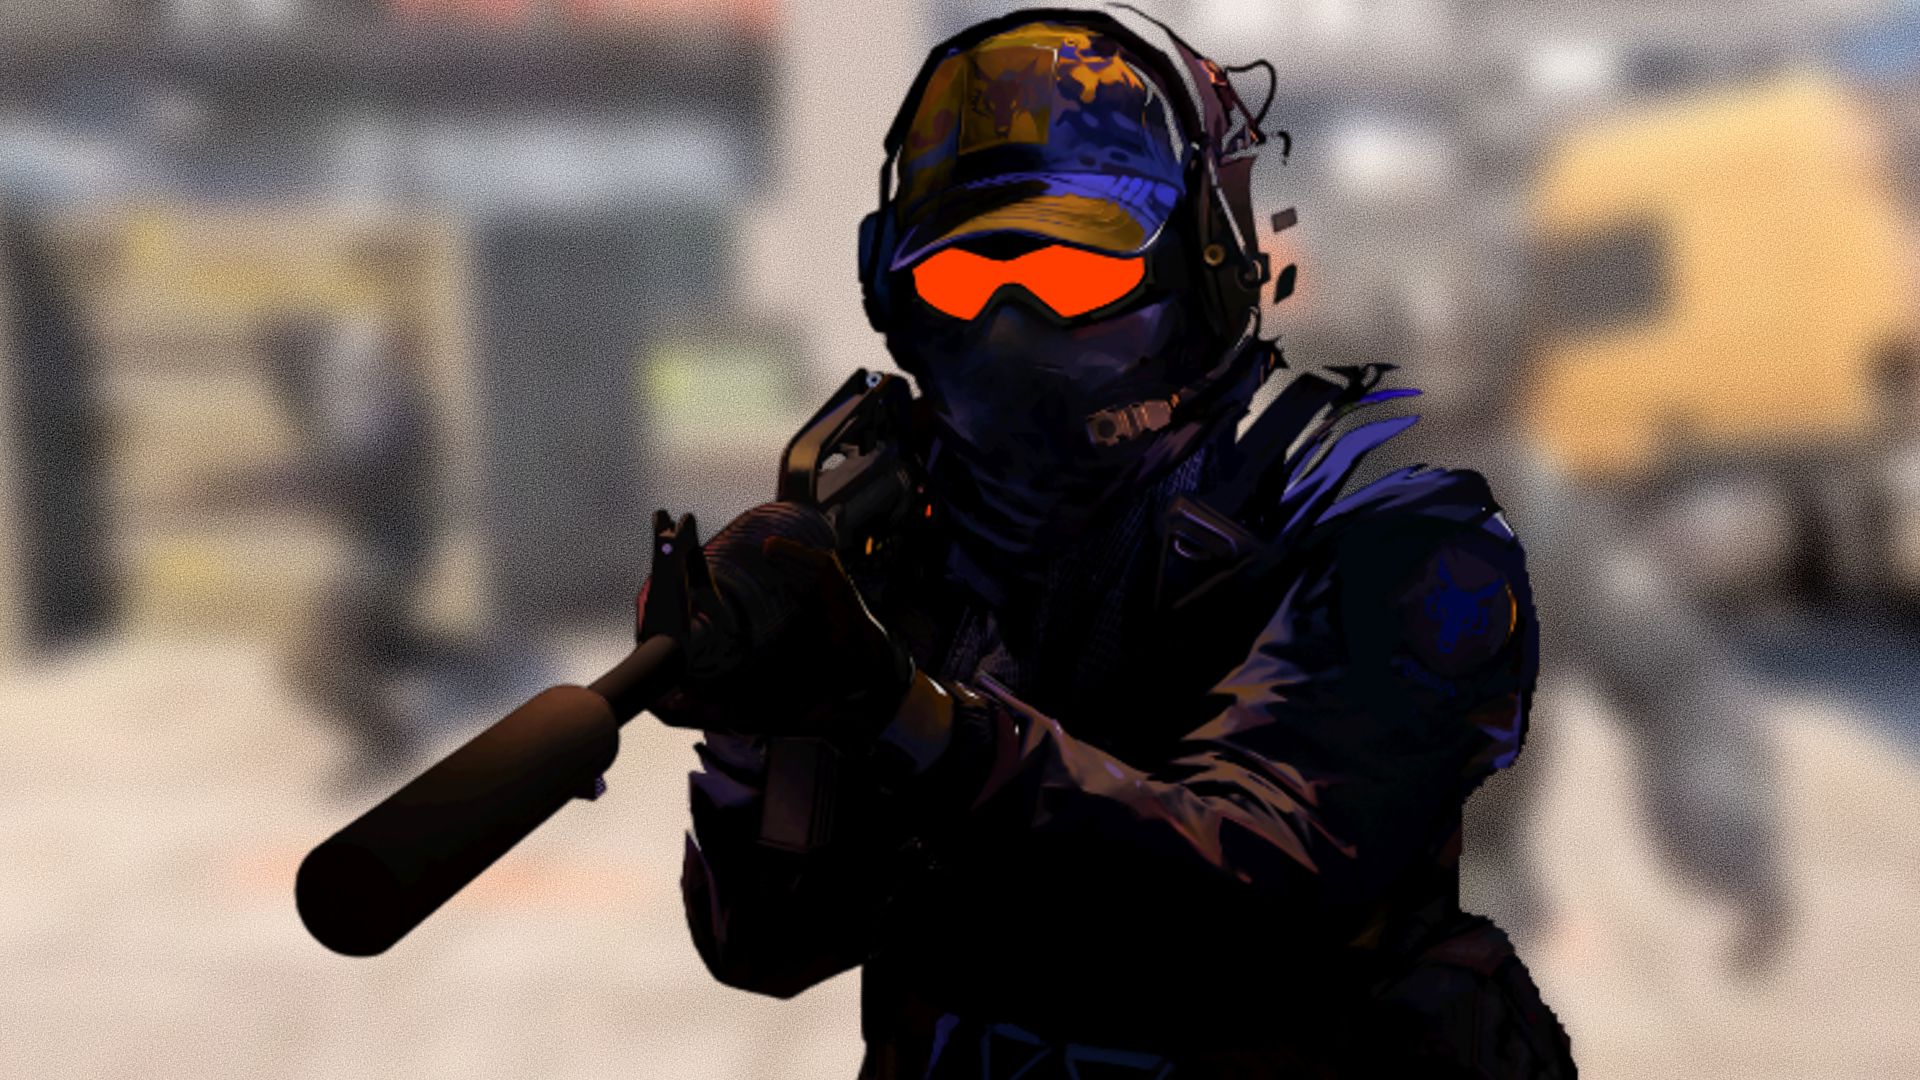 Counter-Strike 2' Release Date Nears As Devs Test Source 2